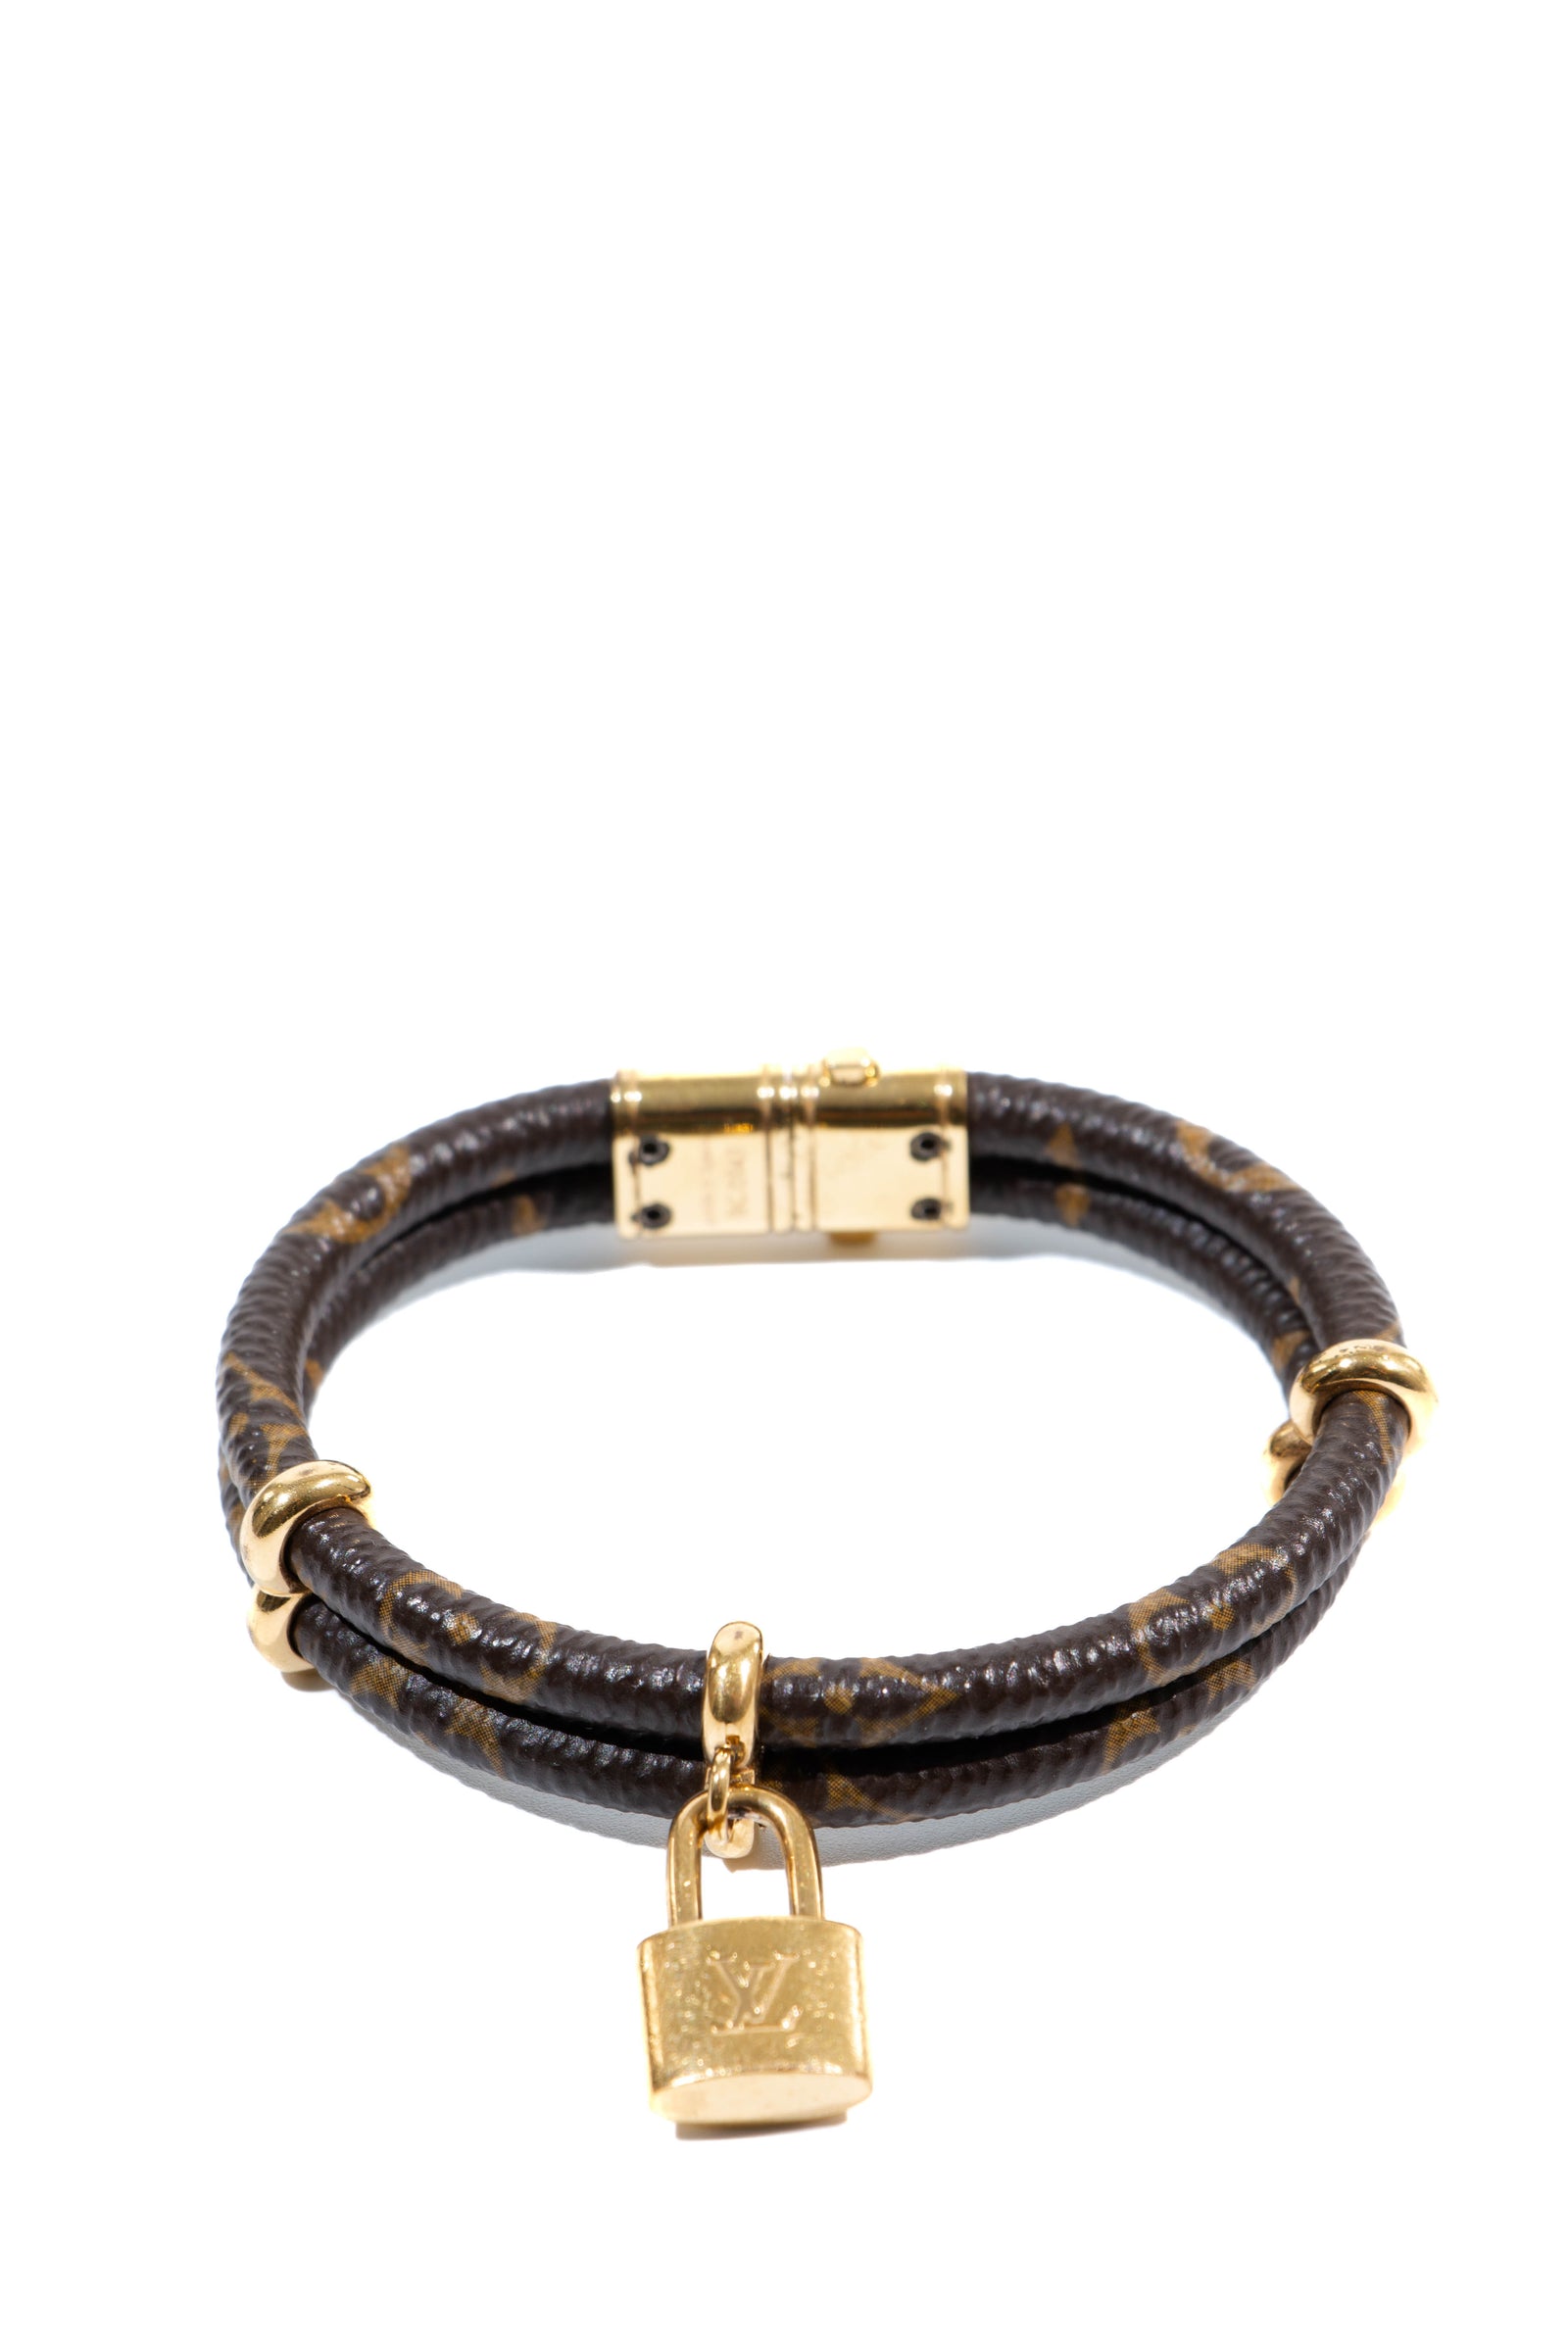 Louis Vuitton Monogram Blooming Bracelet - Brown, Gold-Tone Metal